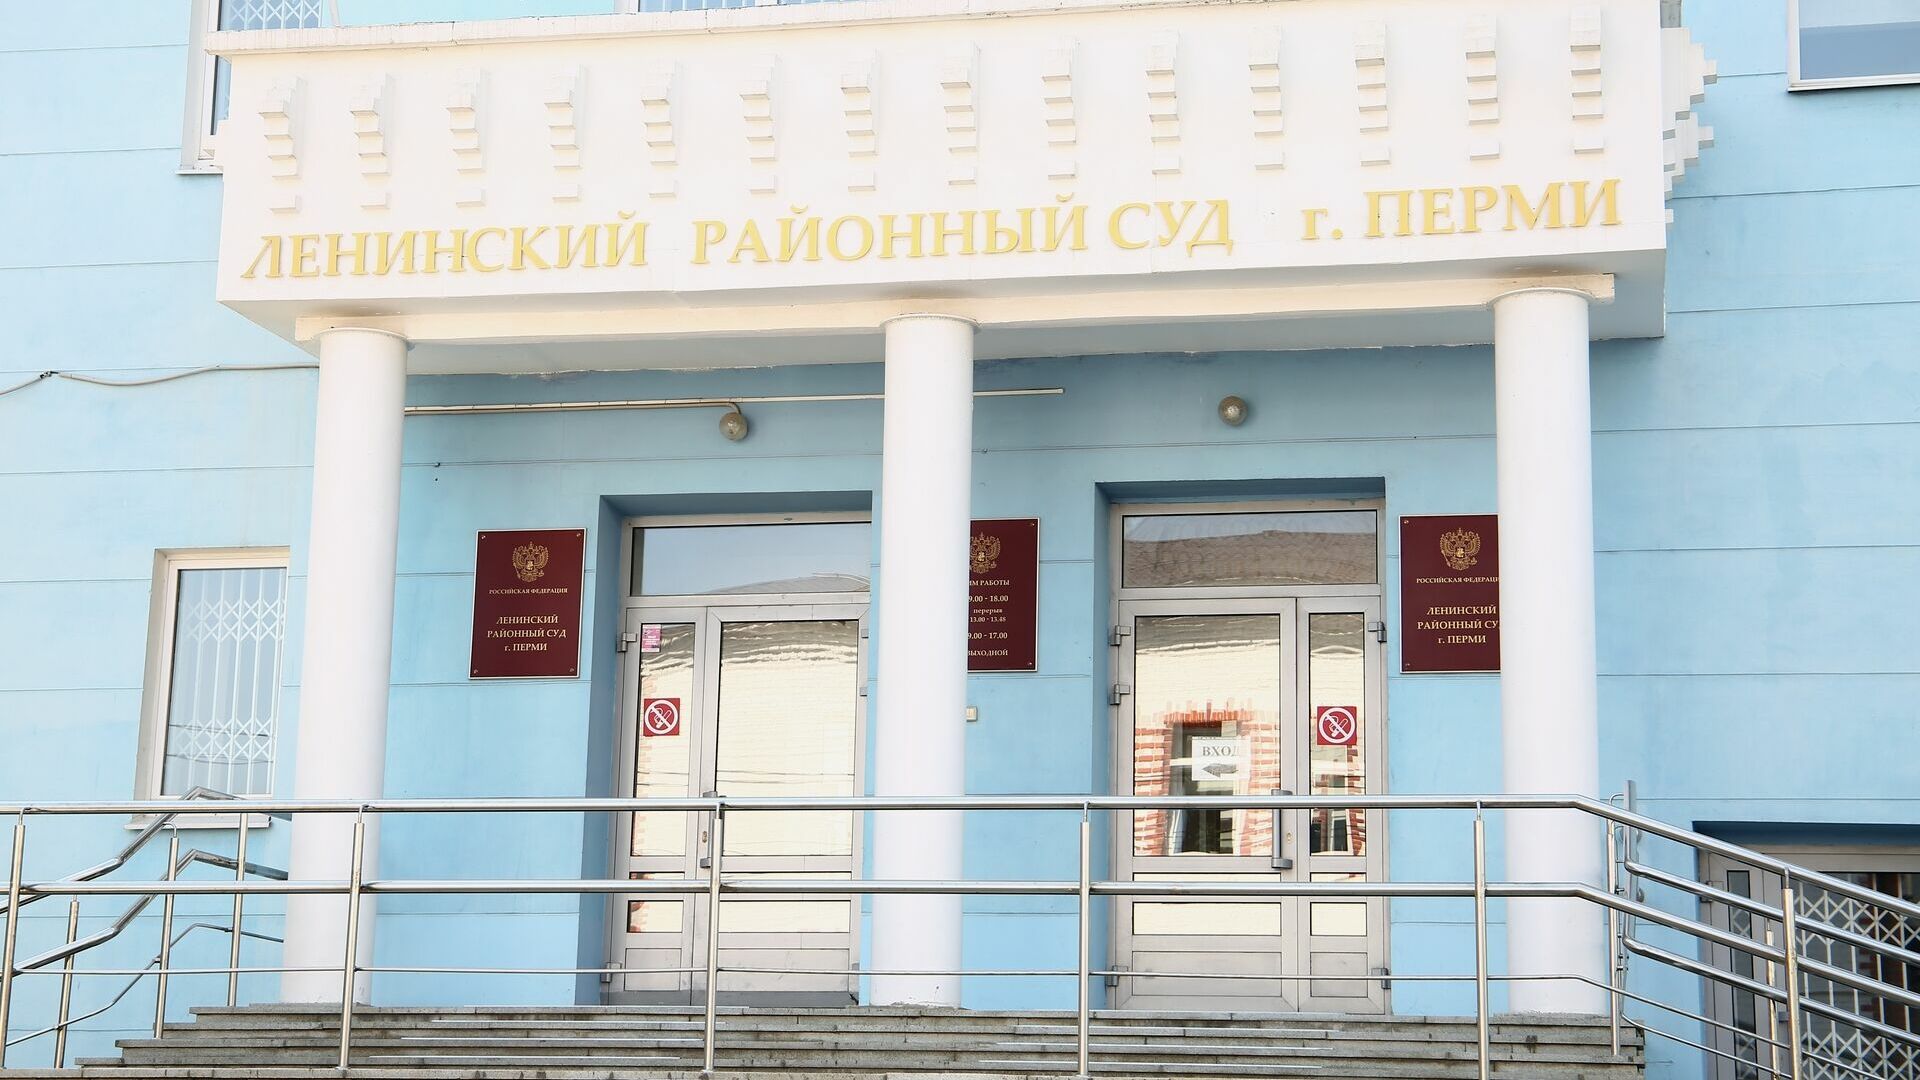 Пермские журналисты обратились к председателю Ленинского районного суда